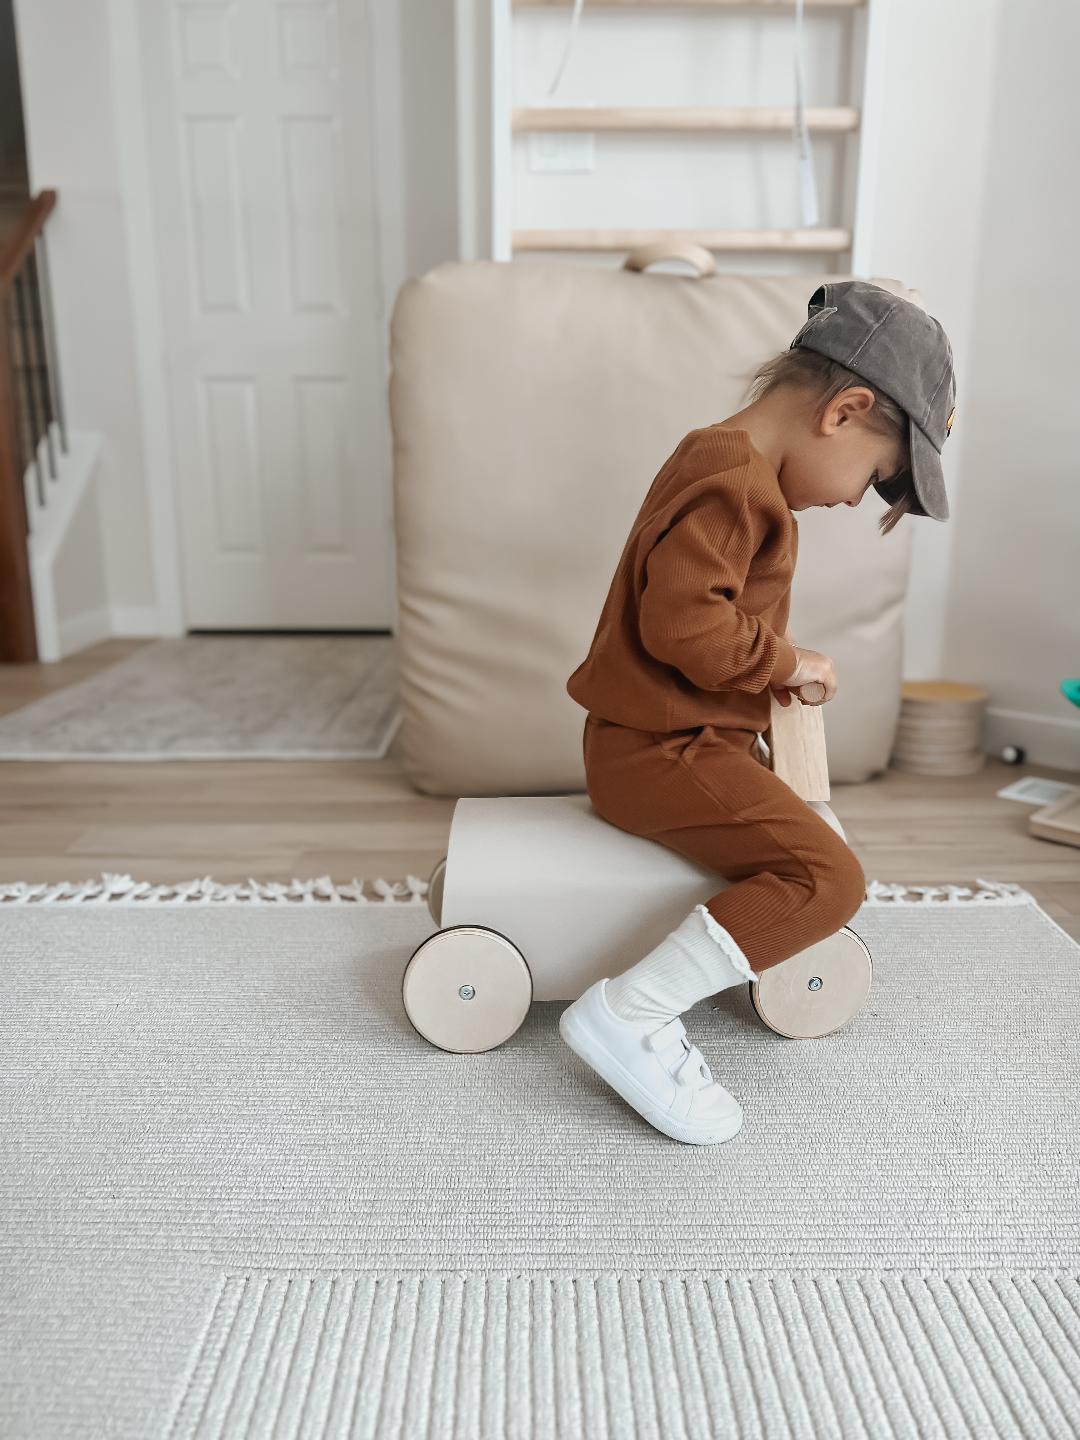 Children's Four-wheel Baby Walker Riding Toy